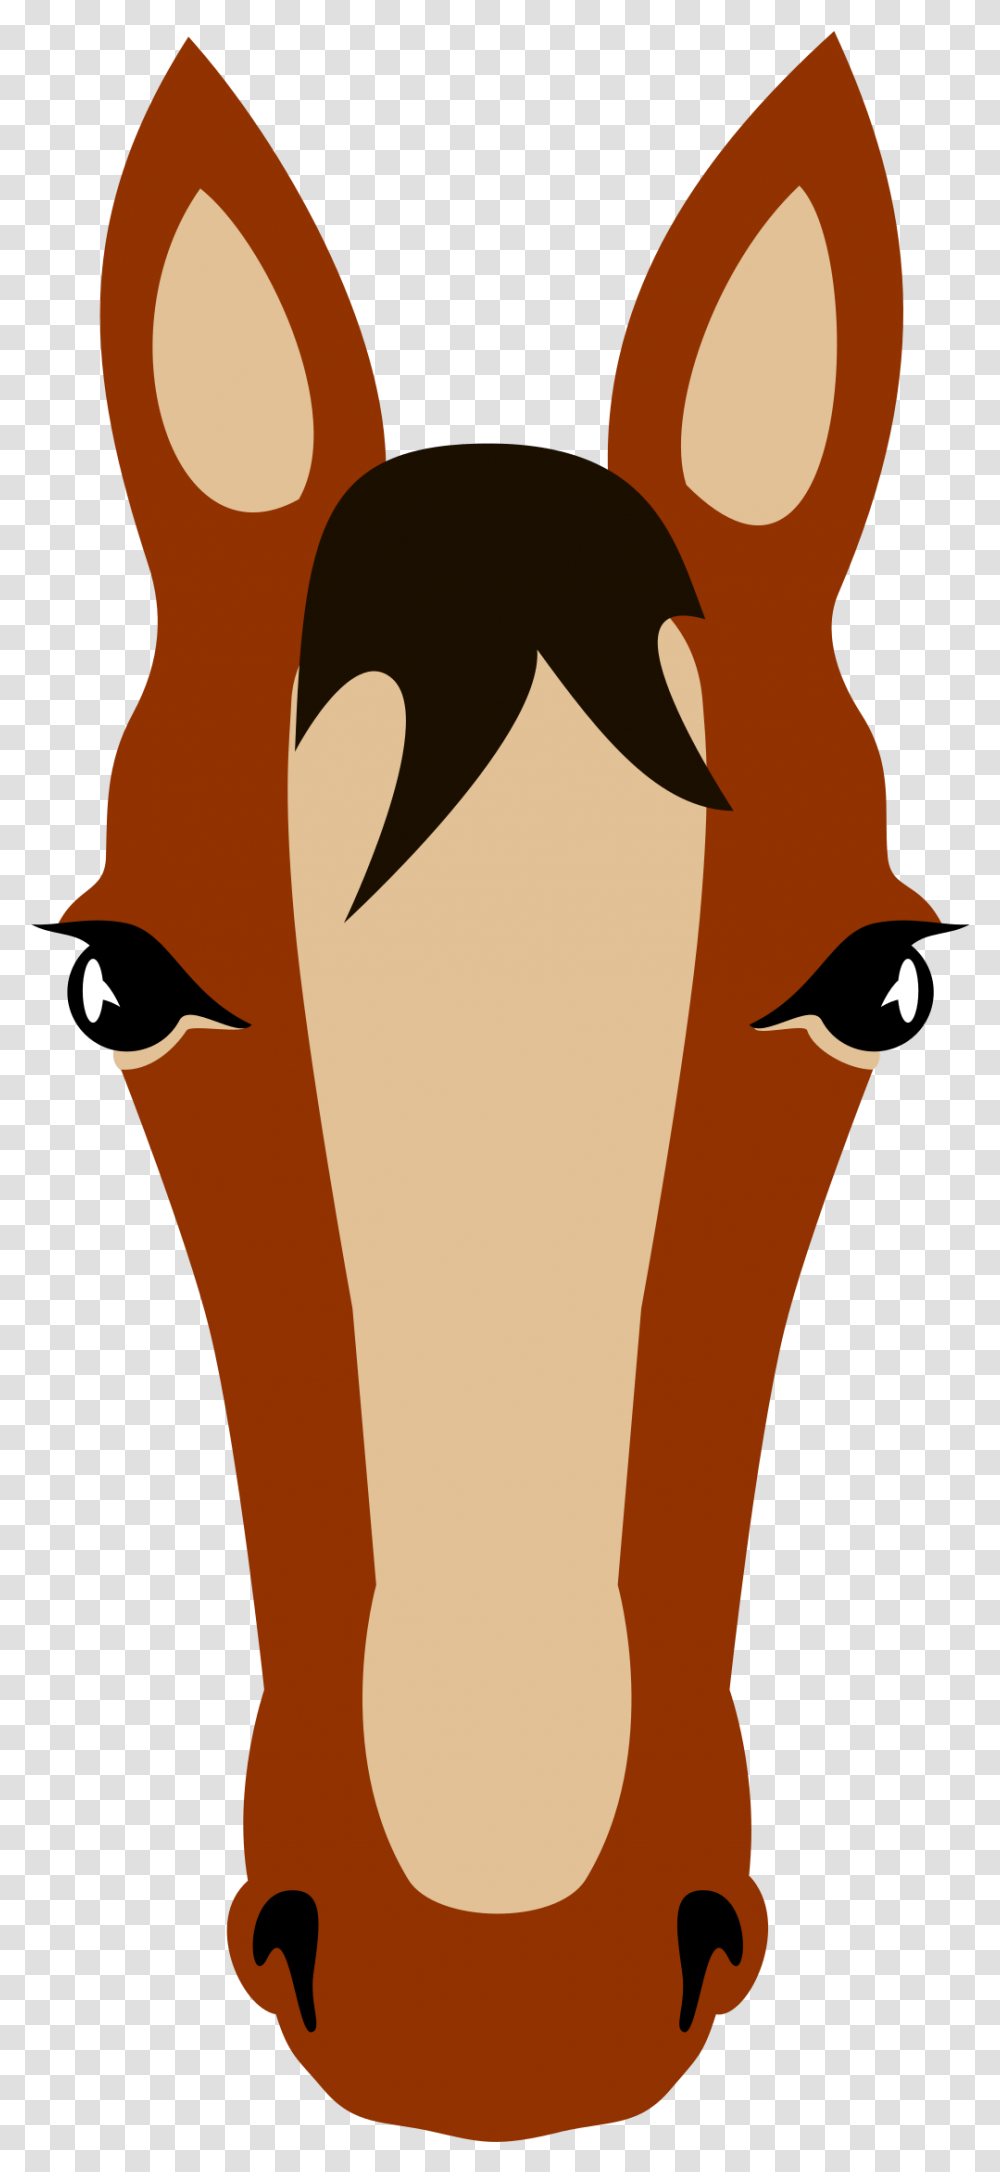 Horse Face Cara De Caballo Dibujo, Apparel, Bird, Animal Transparent Png